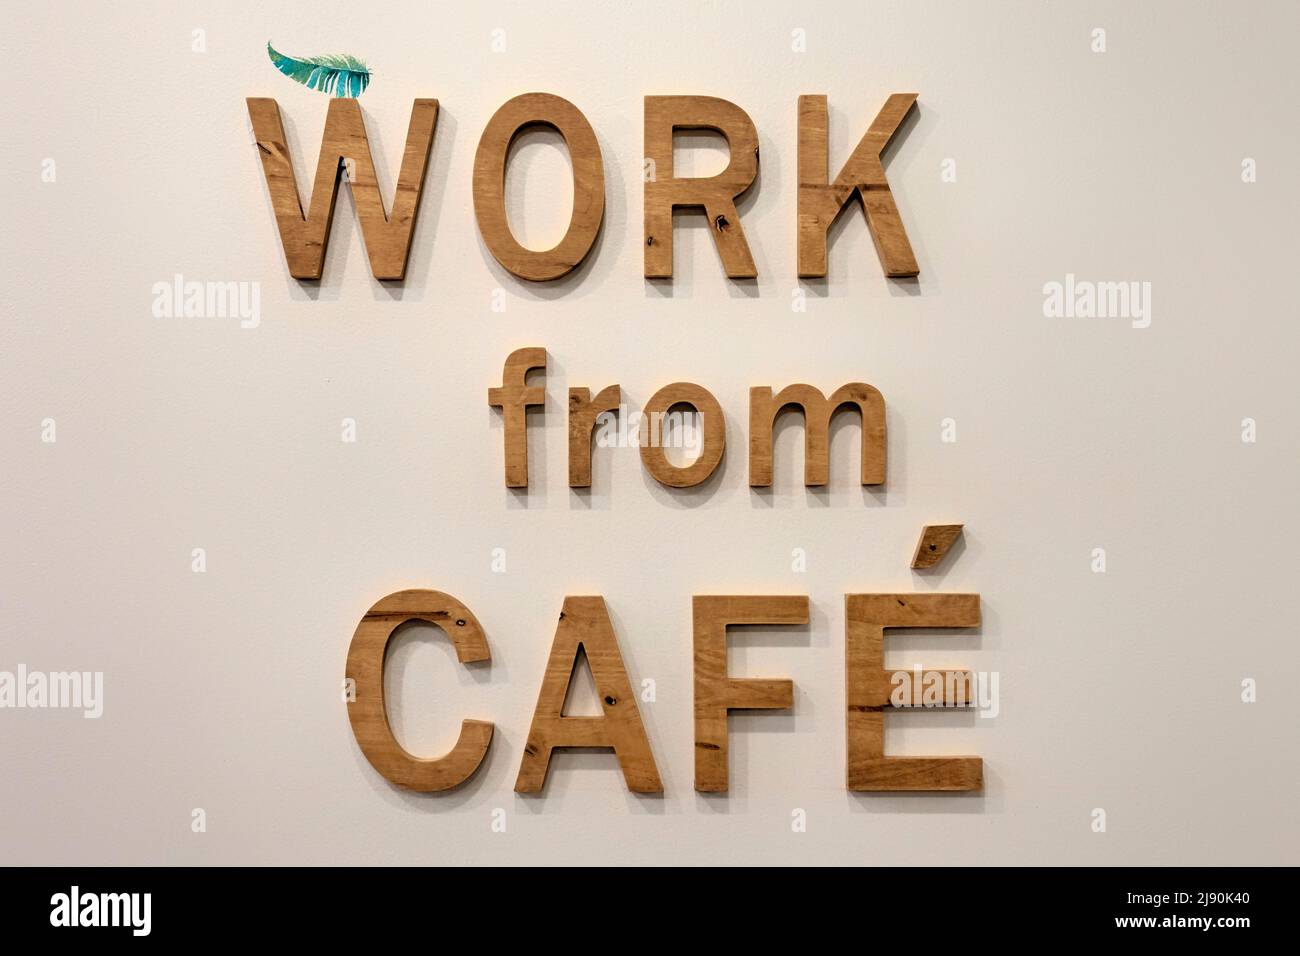 Trabajo desde casa. Trabaje desde Café en lugar de trabajar desde casa. Lugar de trabajo alternativo Foto de stock